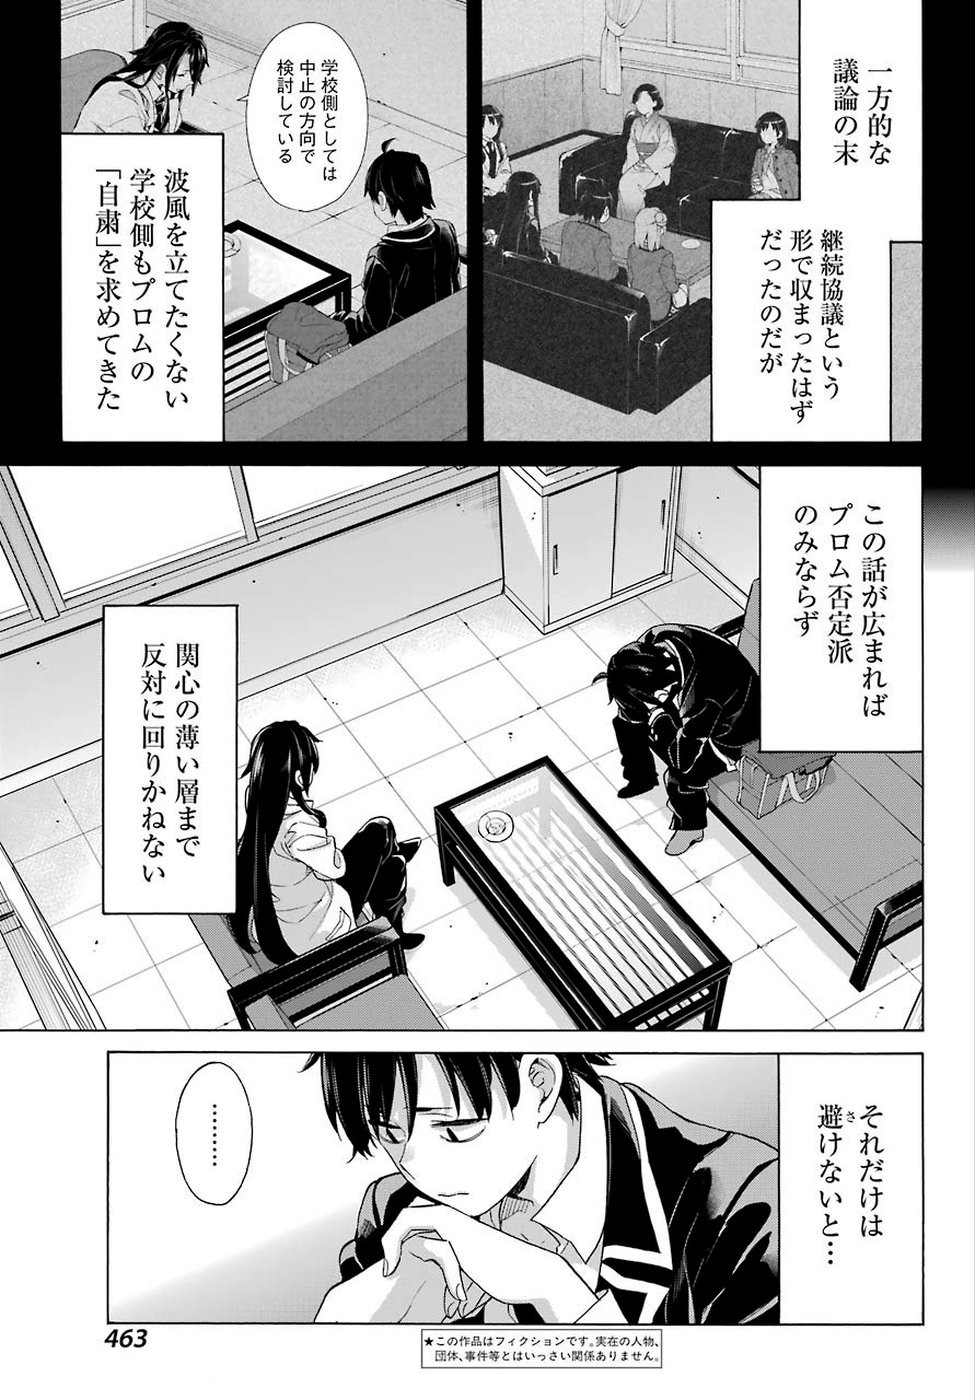 Yahari Ore no Seishun Rabukome wa Machigatte Iru. - Monologue - Chapter 76 - Page 3